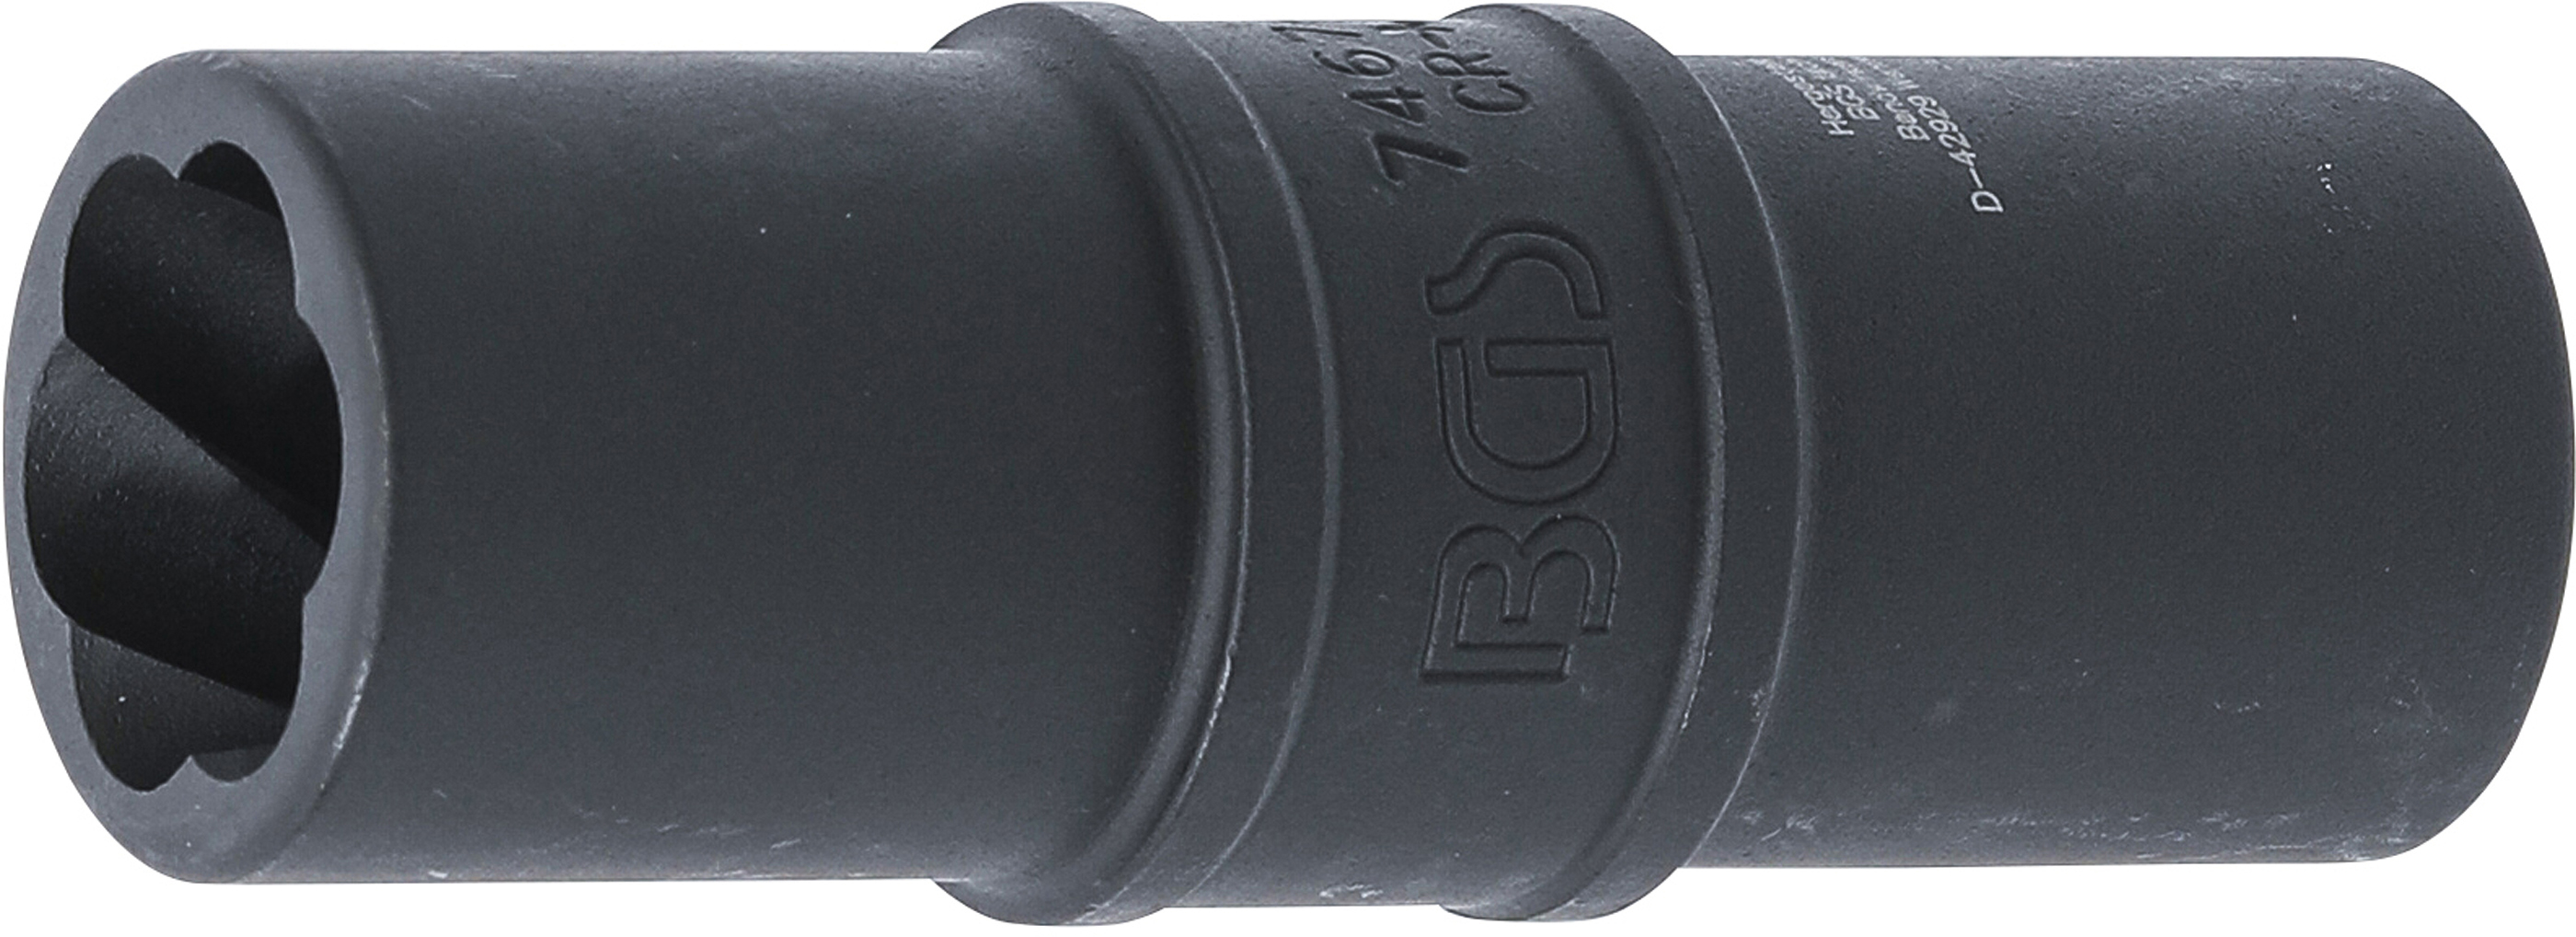 BGS 7467-17  Extractor pentru prezoane de roti deteriorate 17 mm, antrenare 12,5 mm (1/2")